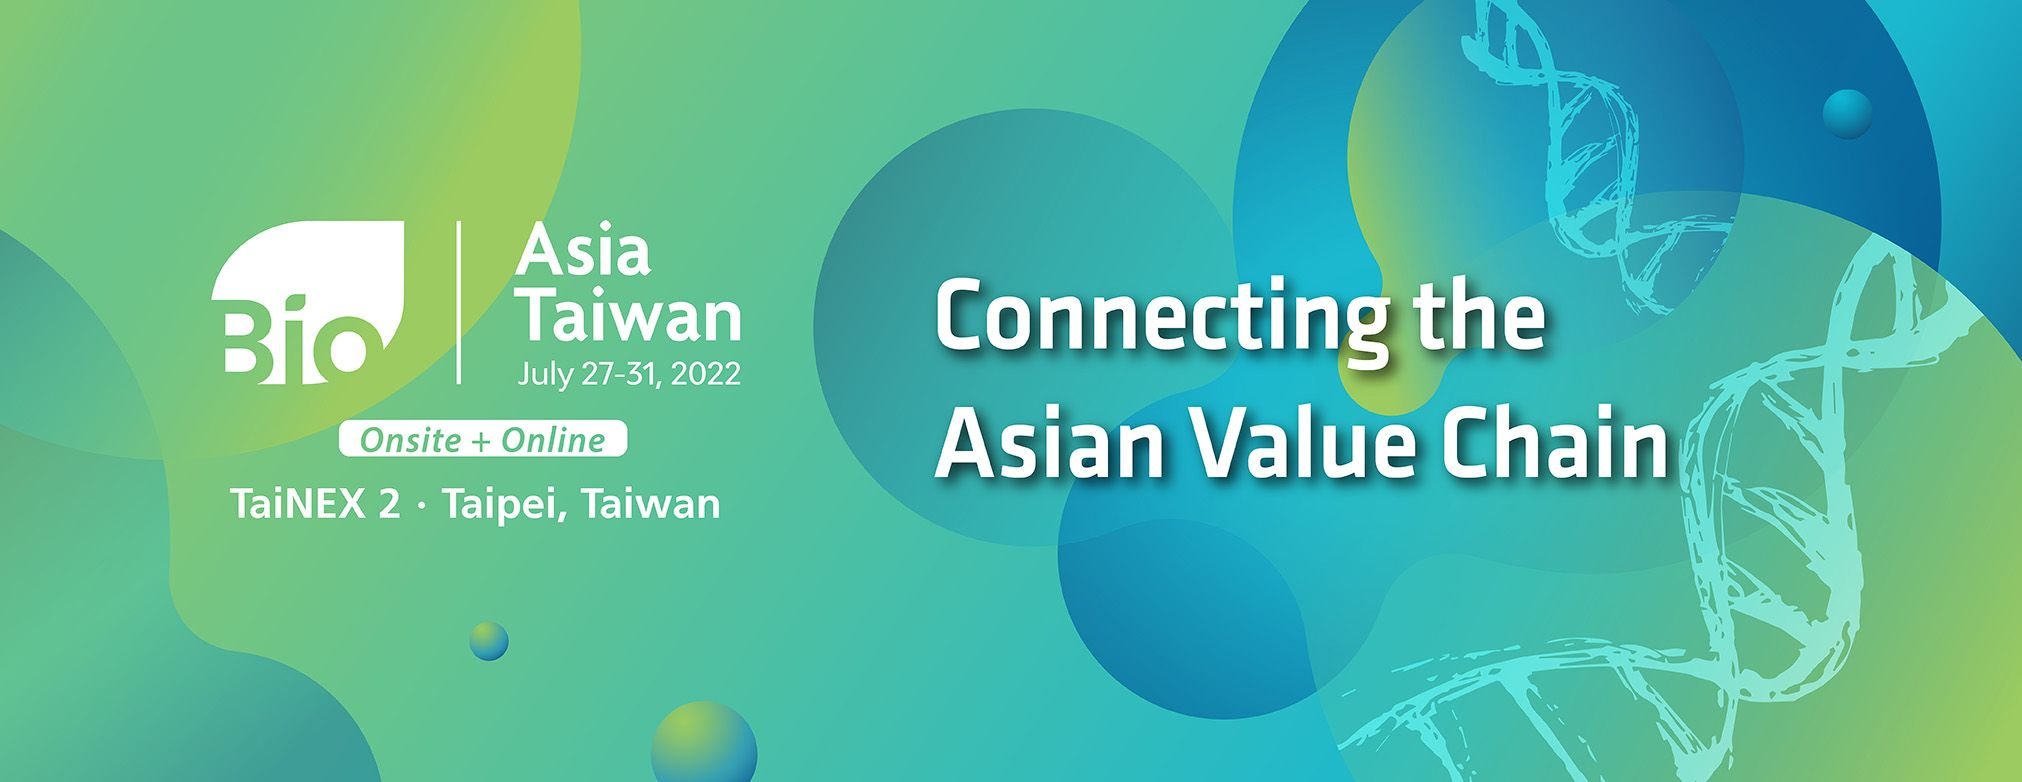 2022年のBioAsia台湾